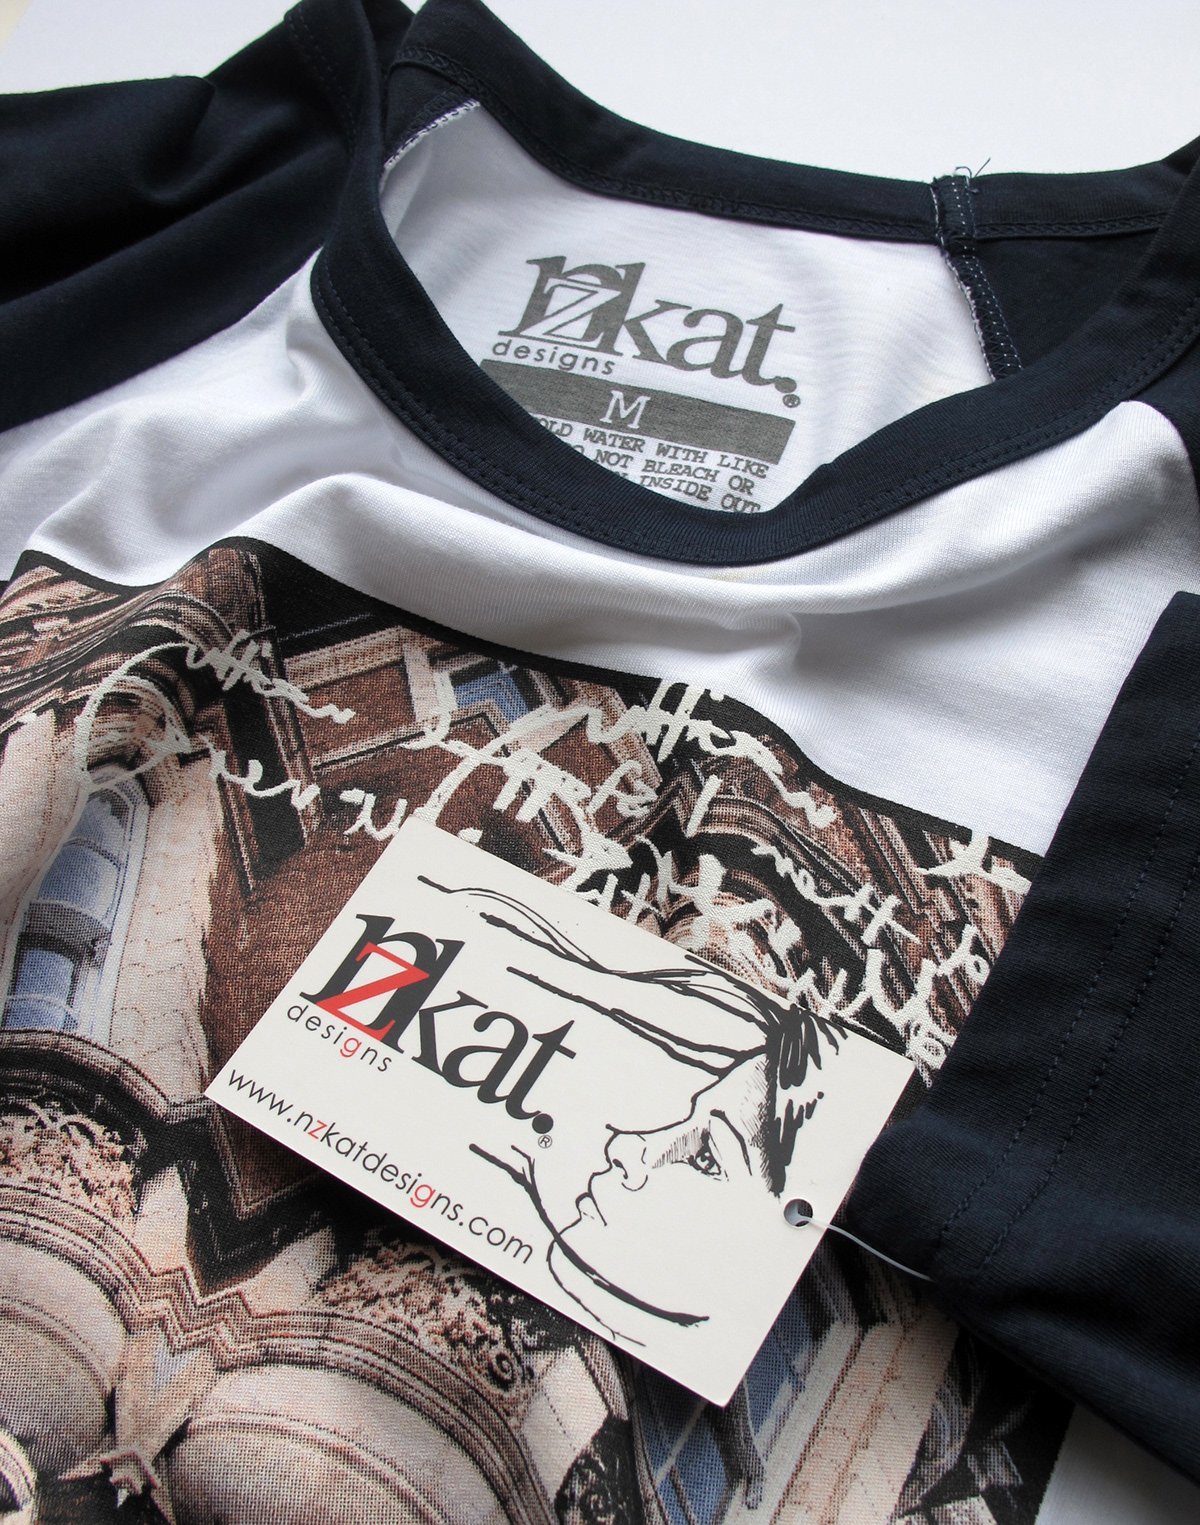 nzkat design Clothing tshirt Retail